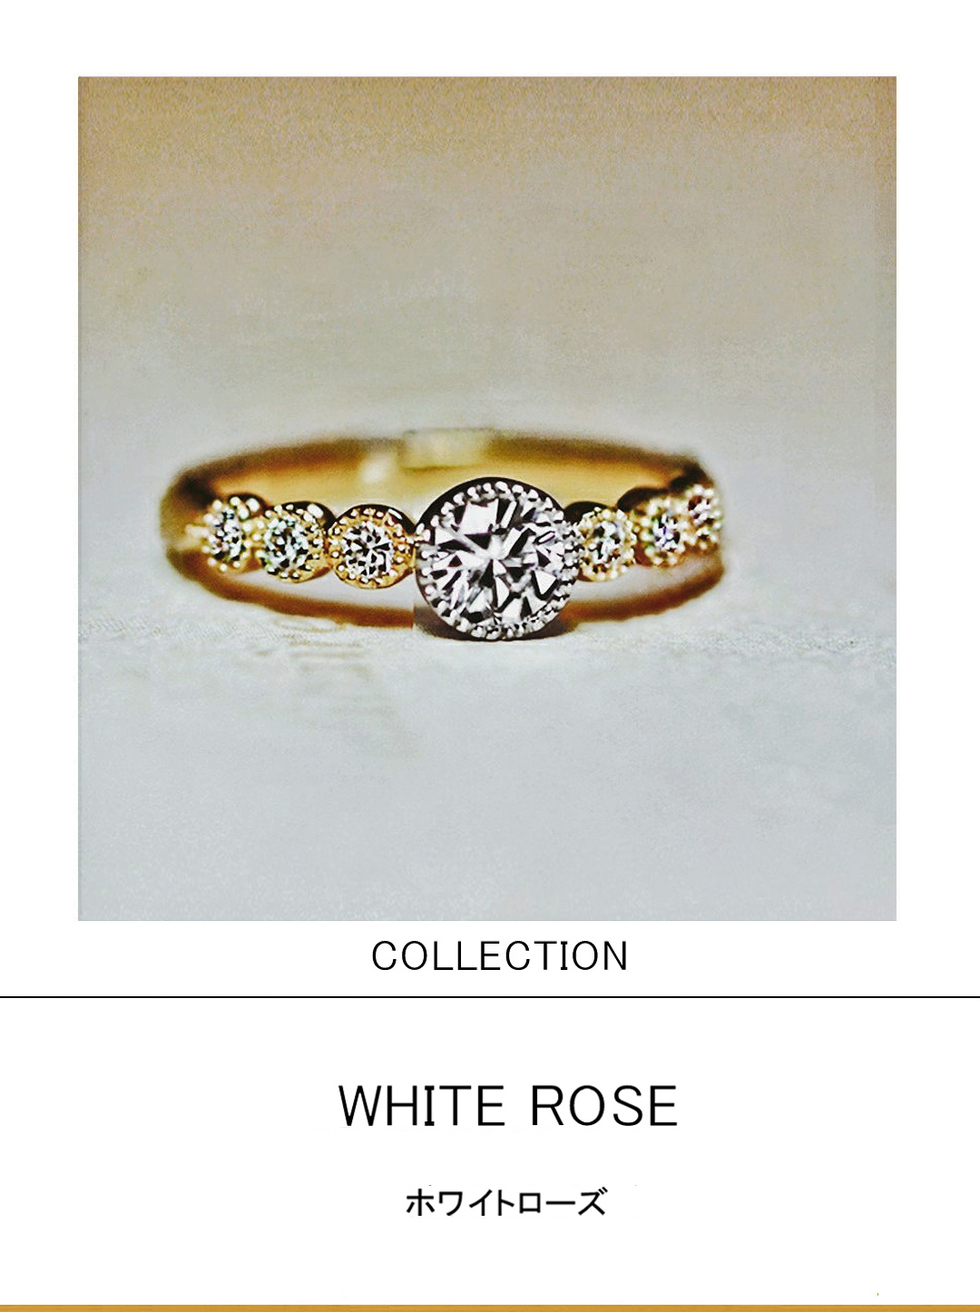 白いバラと黄色のバラが7つ咲いたプラチナとゴールドの婚約指輪 千葉 柏の結婚指輪 婚約指輪 ヨーアンドマーレ